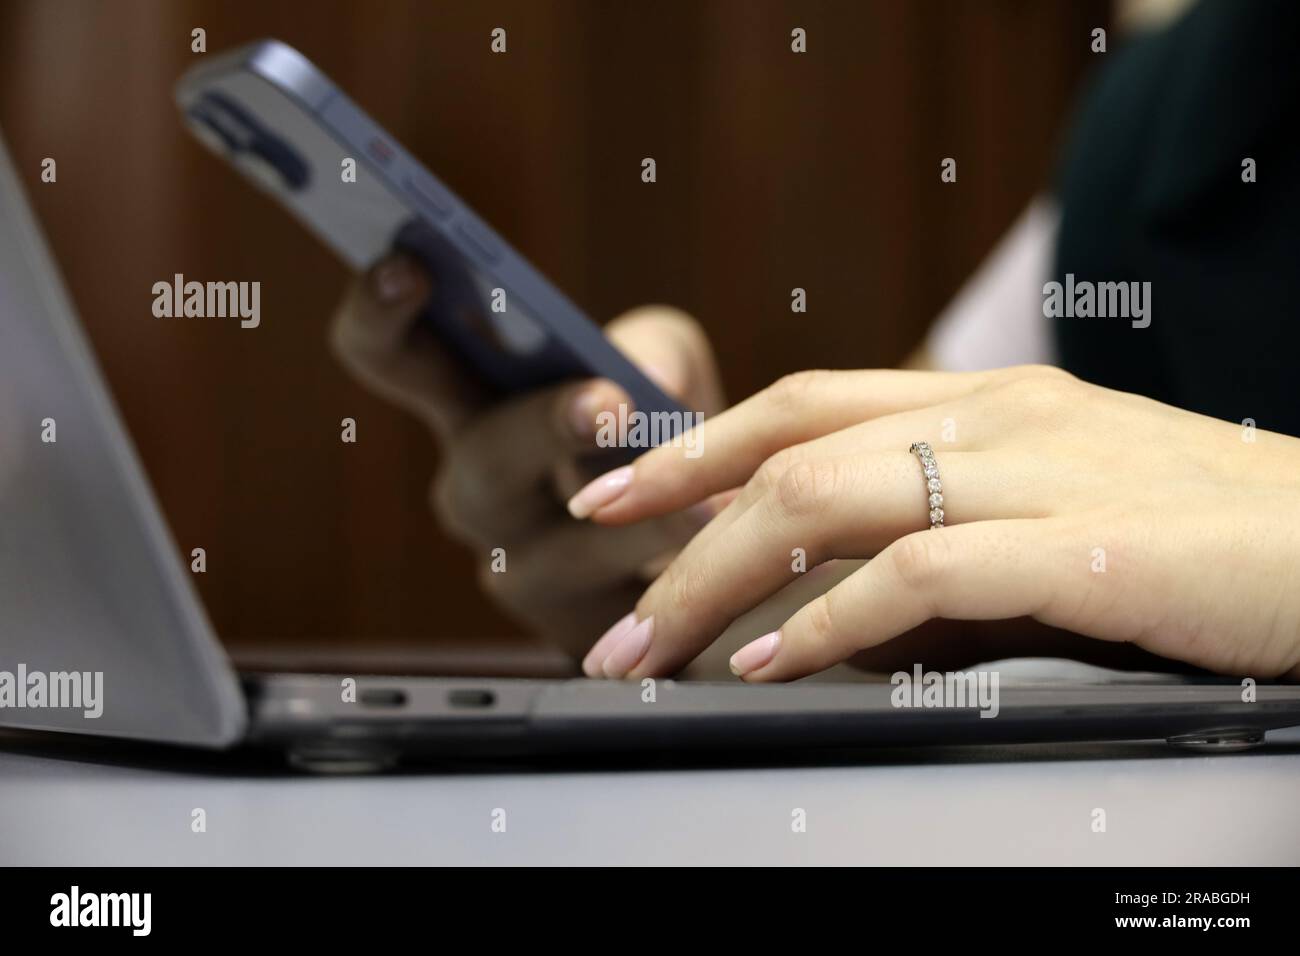 Femme utilisant un smartphone sur l'arrière-plan du clavier de l'ordinateur portable, mise au point sélective sur la main femelle gauche. Concept de communication, de travail et de paiement en ligne Banque D'Images